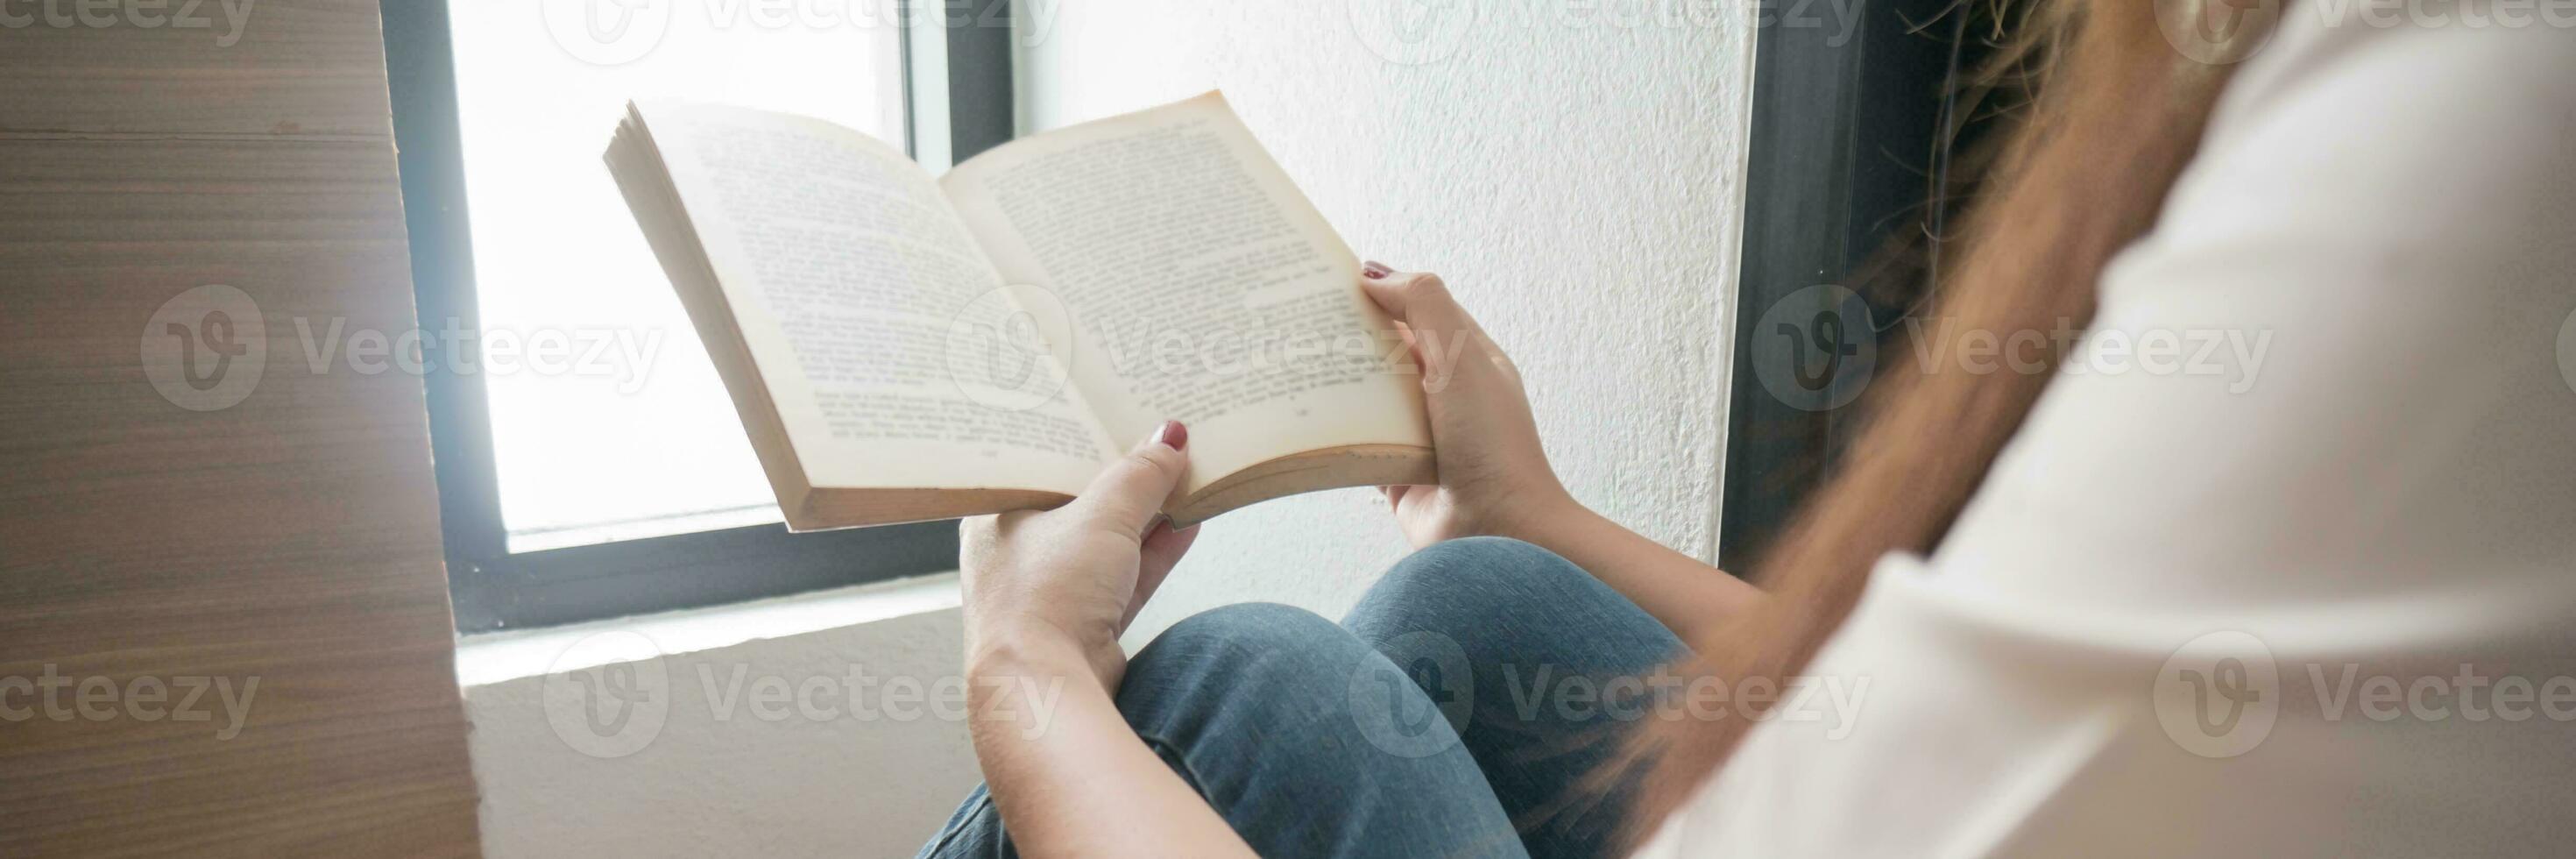 Dames lezing boek en ontspannende Bij huis en comfort in voorkant van geopend boek. foto